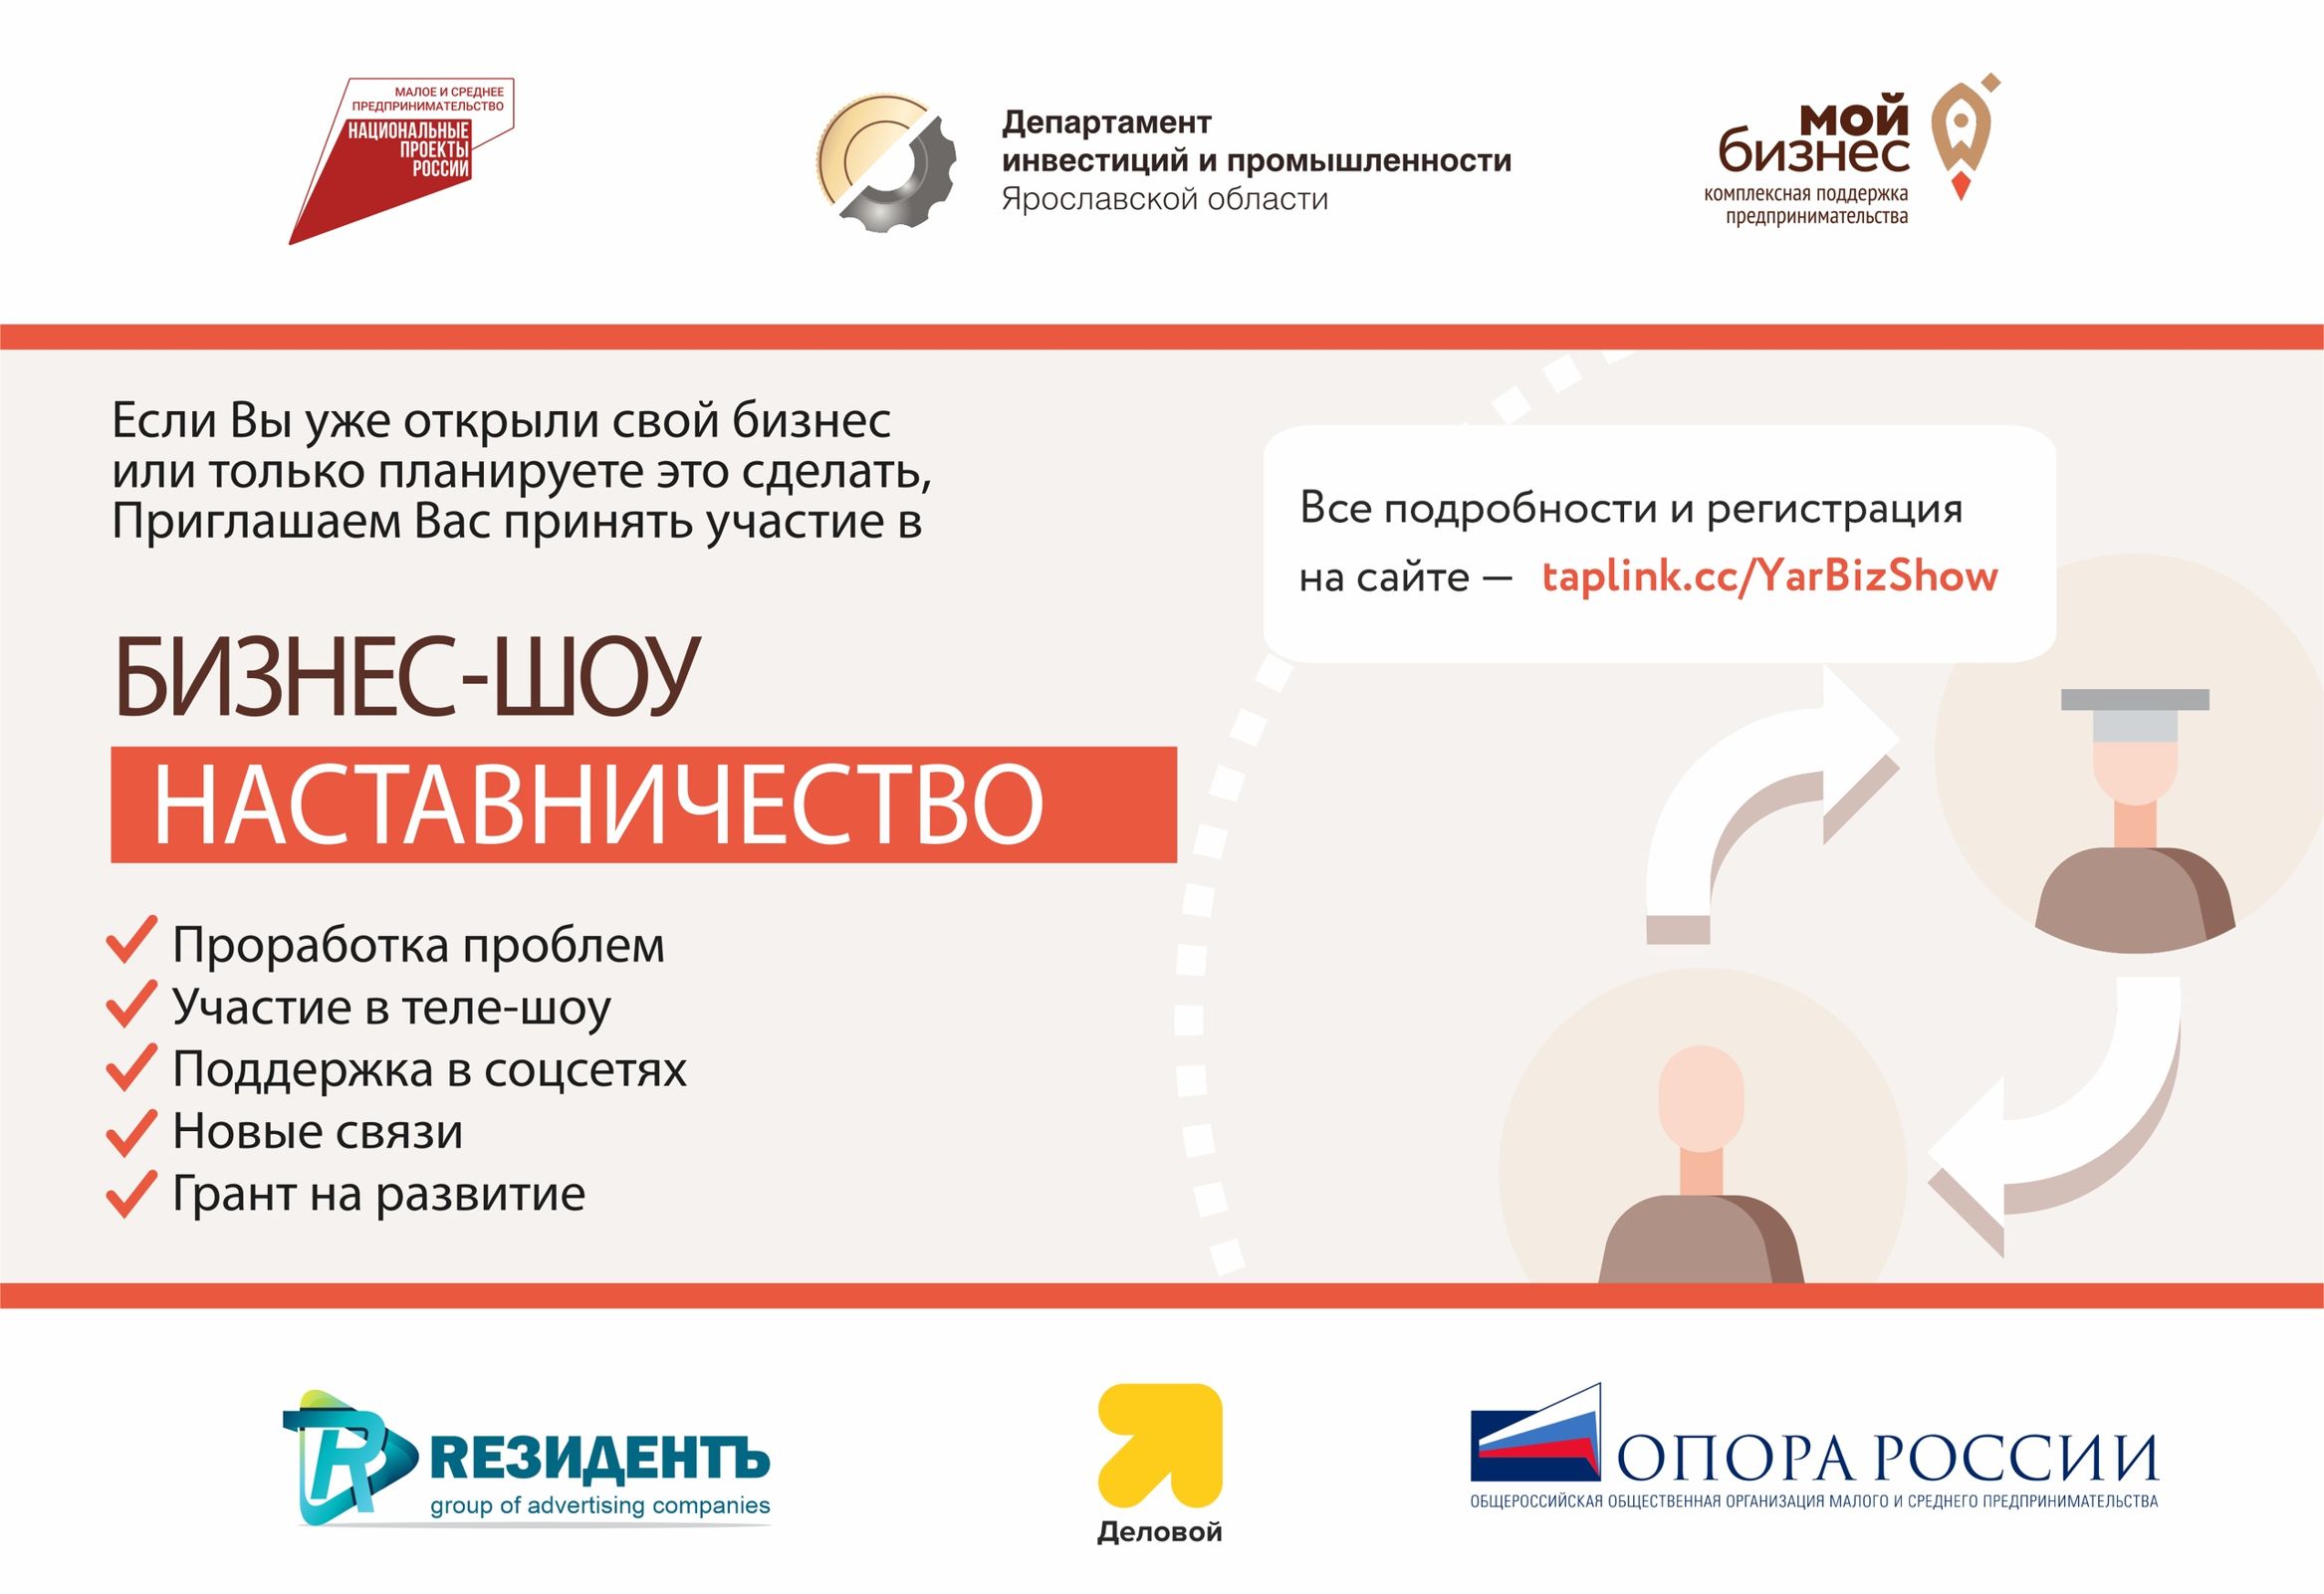 Конкурс для предпринимателей Ярославское бизнес-шоу «Наставничество» #ЯрБизнесШоу